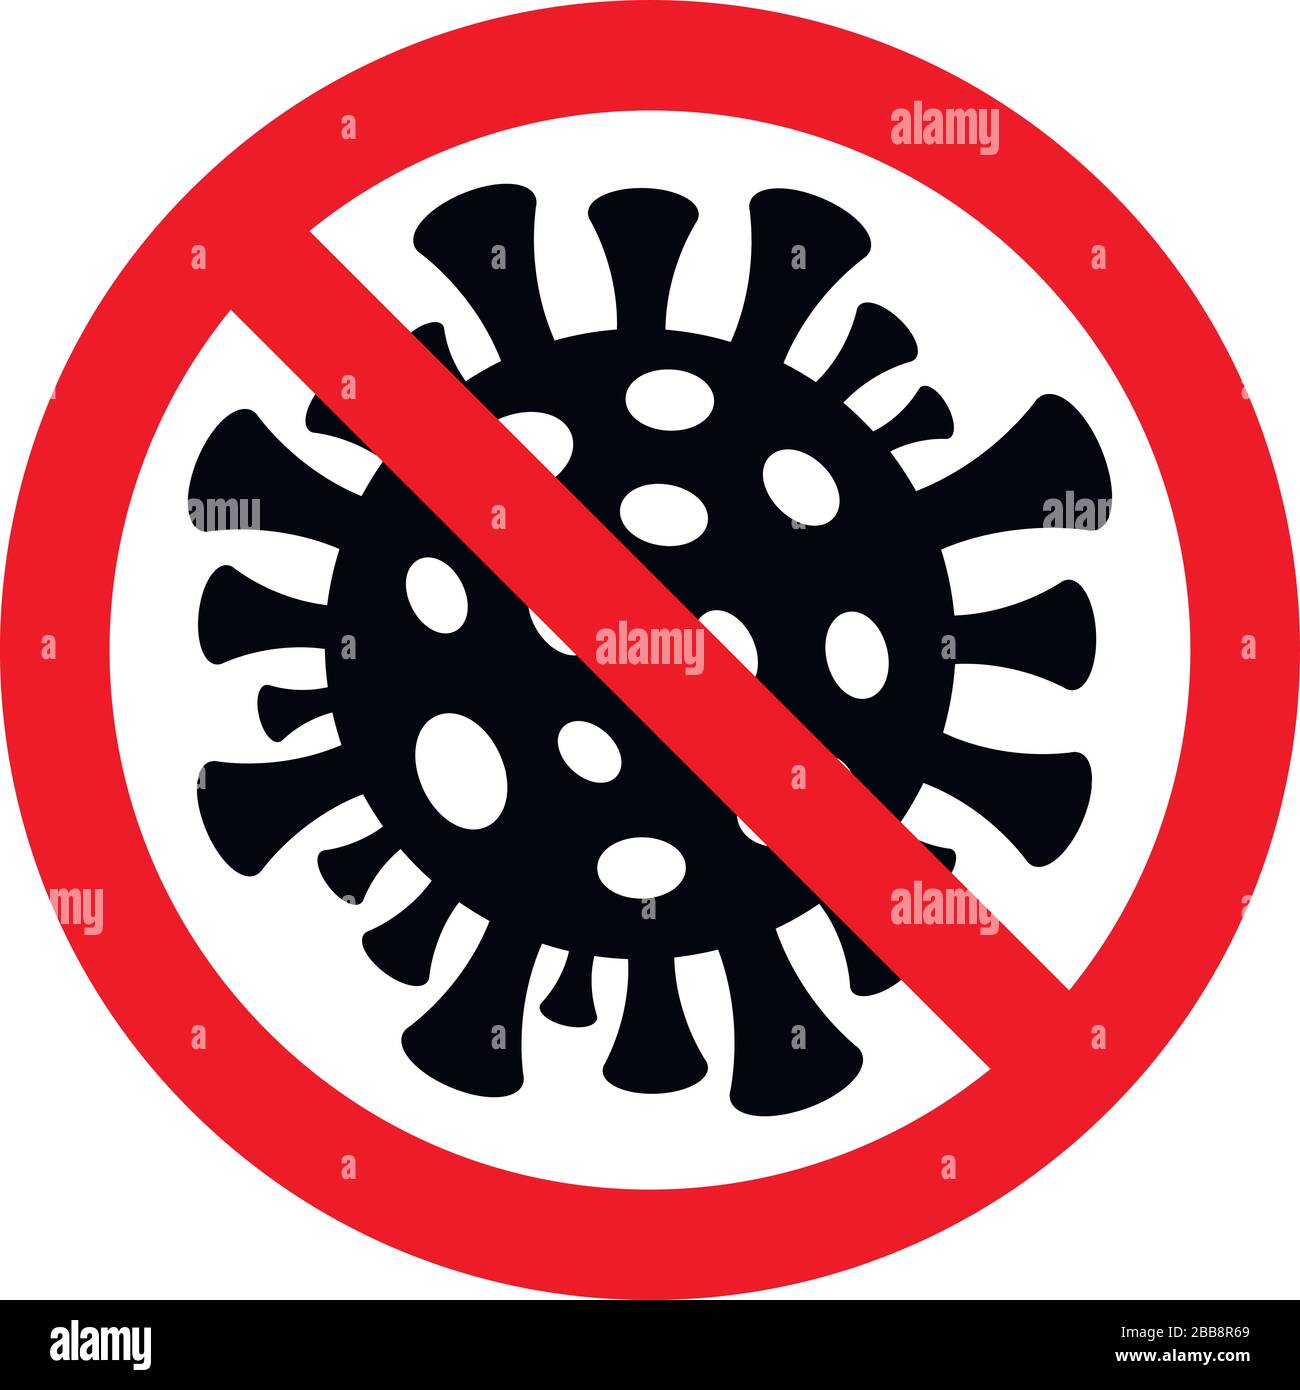 Coronavirus icon. COVID-19 icon. Stop COVID-19 sign. Stock Vector